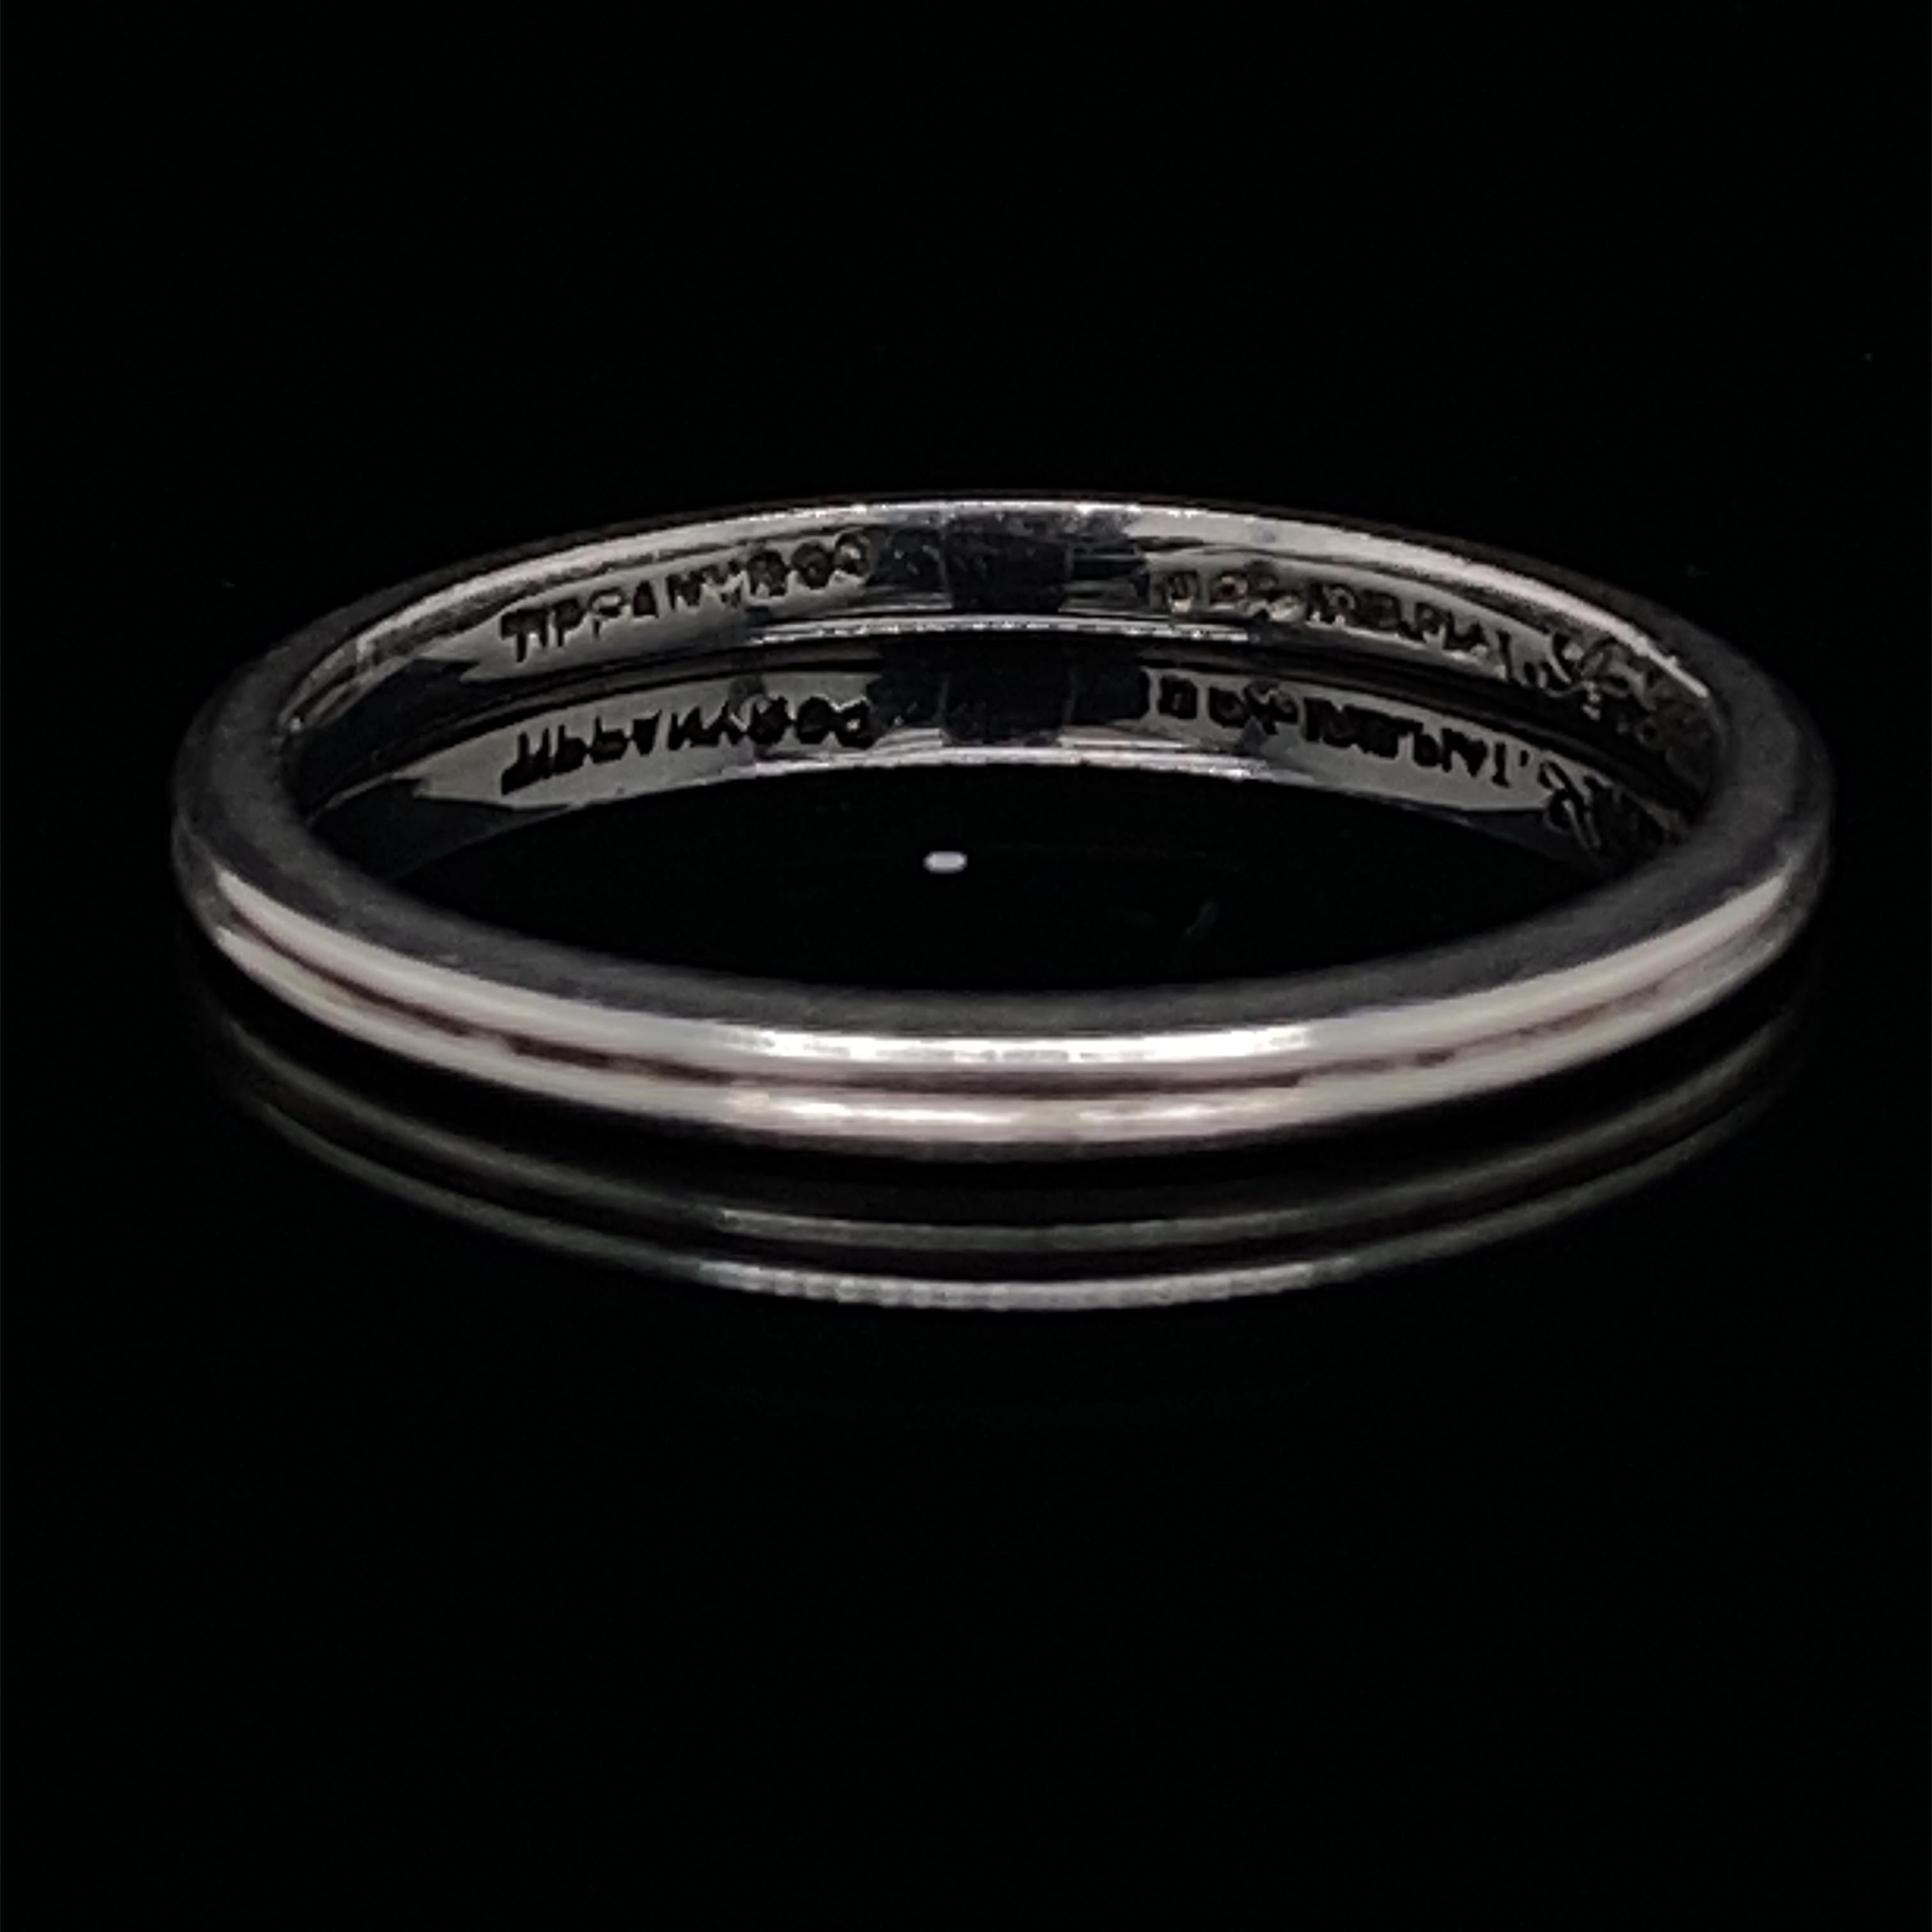 Ein klassischer Platin-Ehering von Tiffany & Co., um 1947.

Dieser elegante, feine Ring hat eine tiefe Rillenstruktur in der Mitte und besteht aus Platin und Iridium, was typisch für Ringe dieser Zeit aus den Vereinigten Staaten war.

Signiert